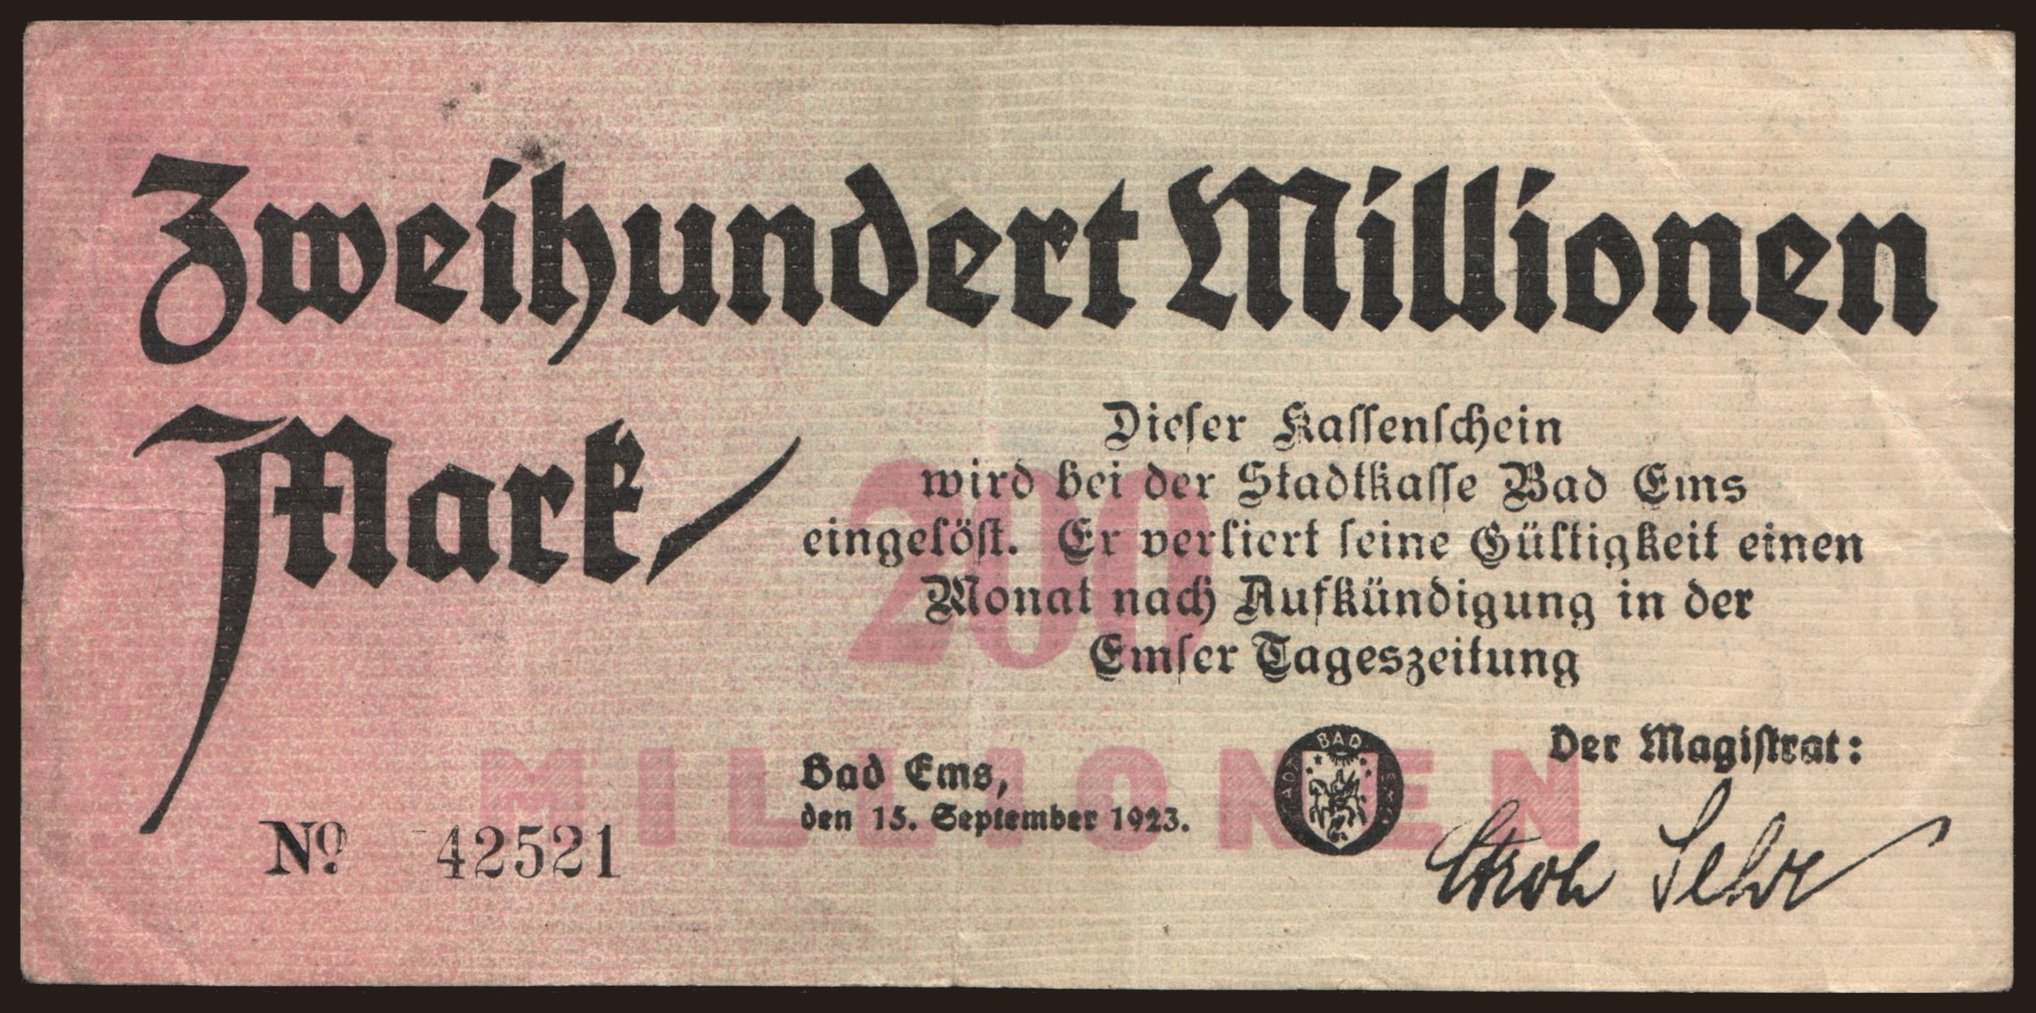 Bad Ems/ Stadt, 200.000.000 Mark, 1923